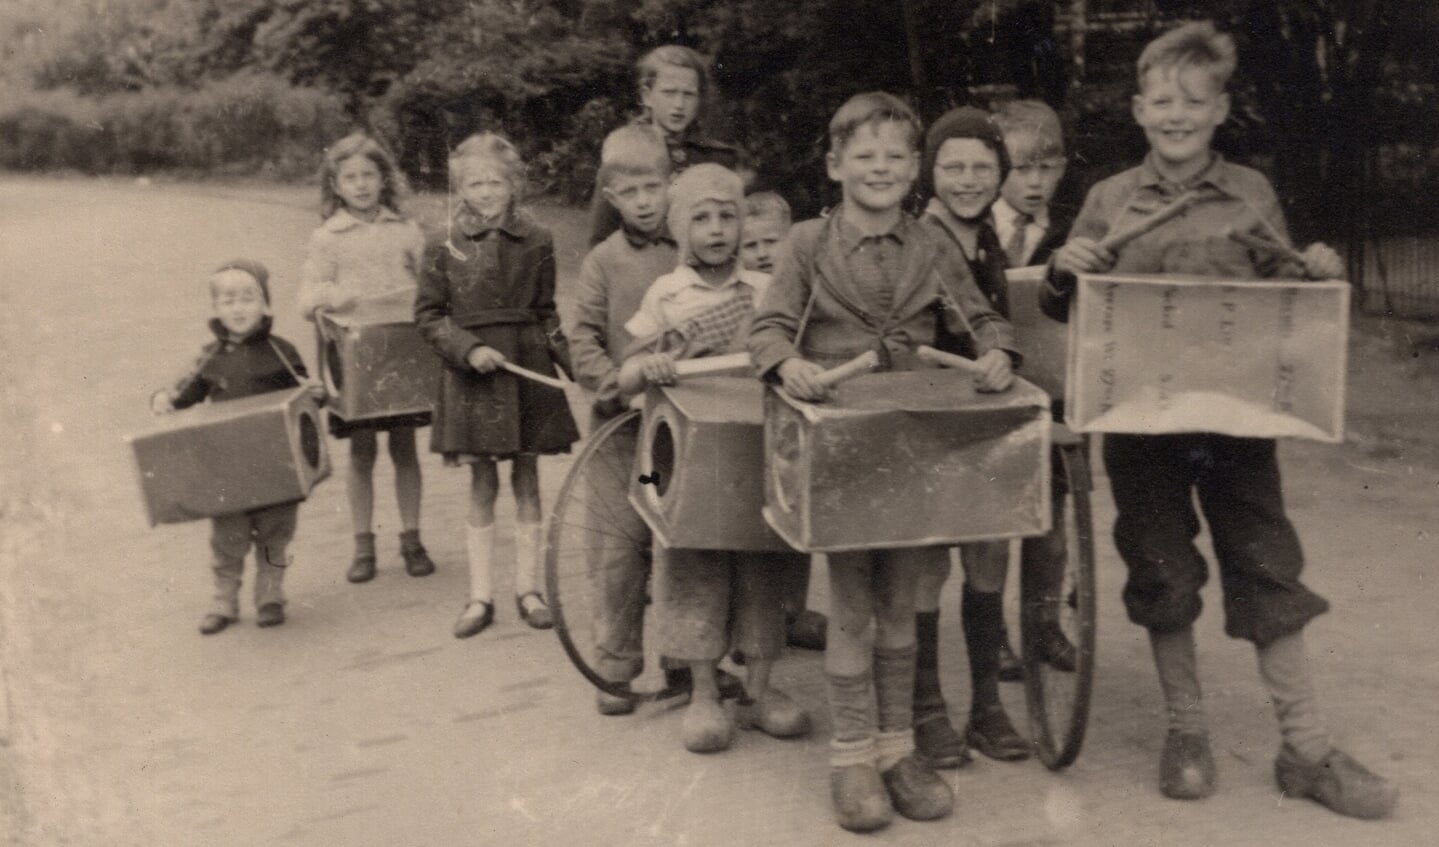 Hilversumse kinderen met van
voedselblikken gemaakte trommels, Hilversum (1945).